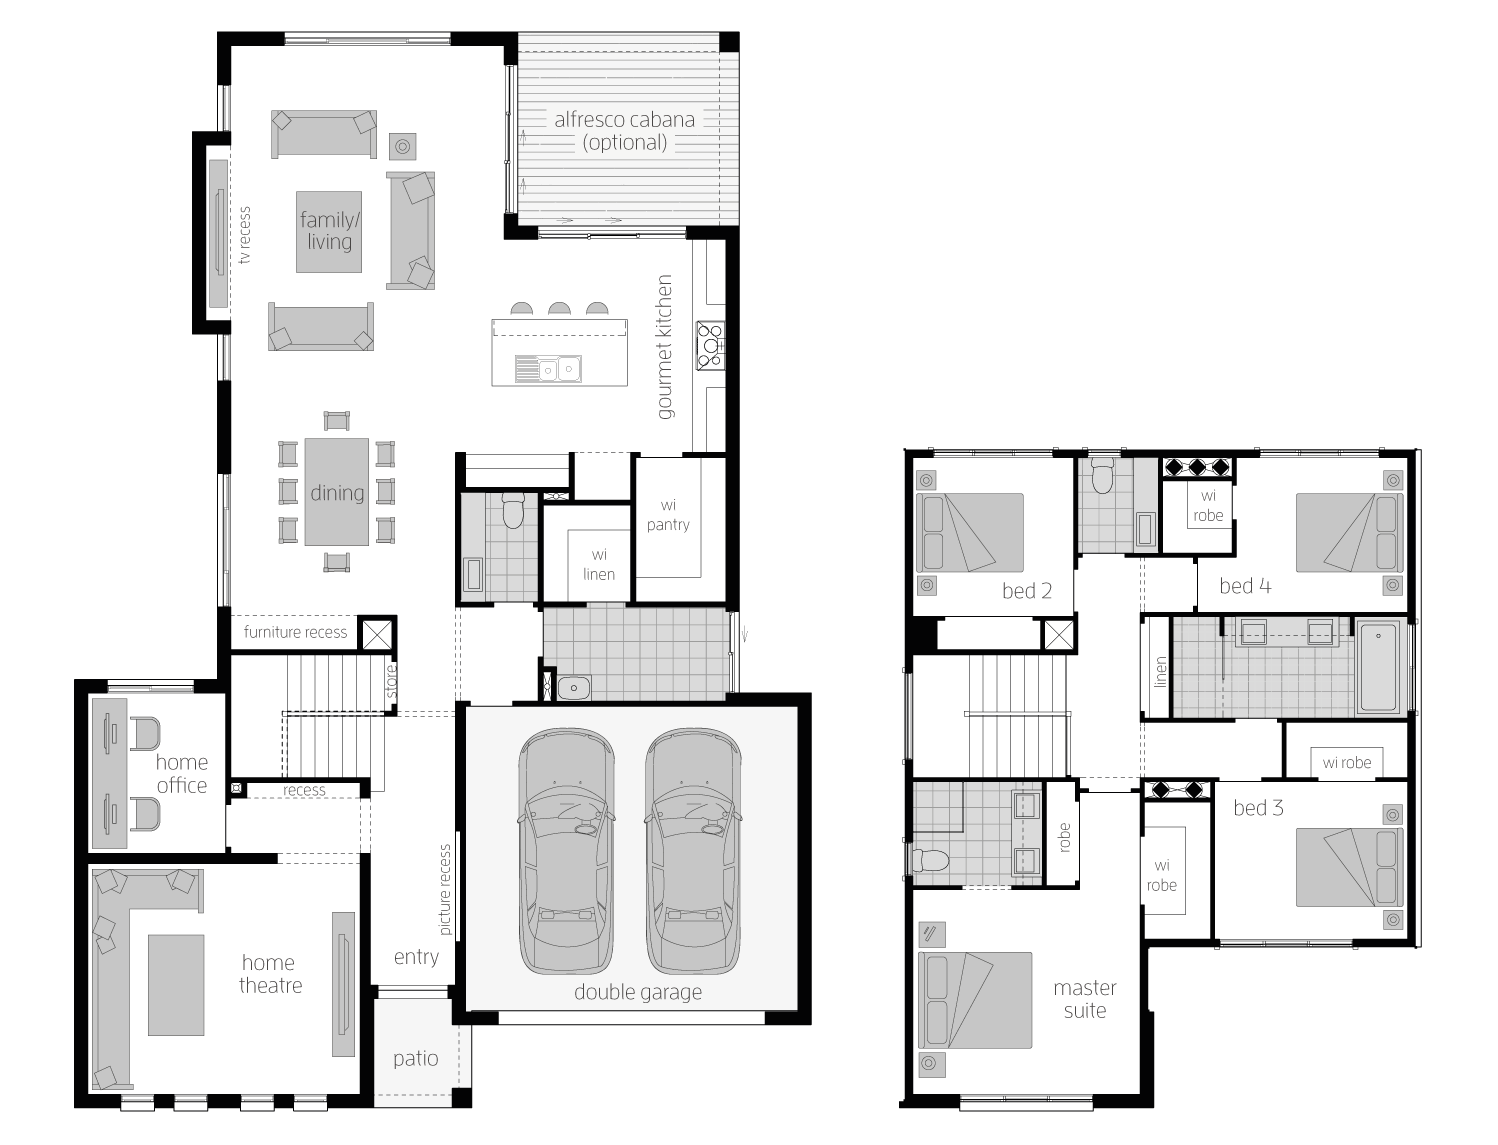 Floor Plan - Elanora32 - Two Storey Home - McDonald Jones